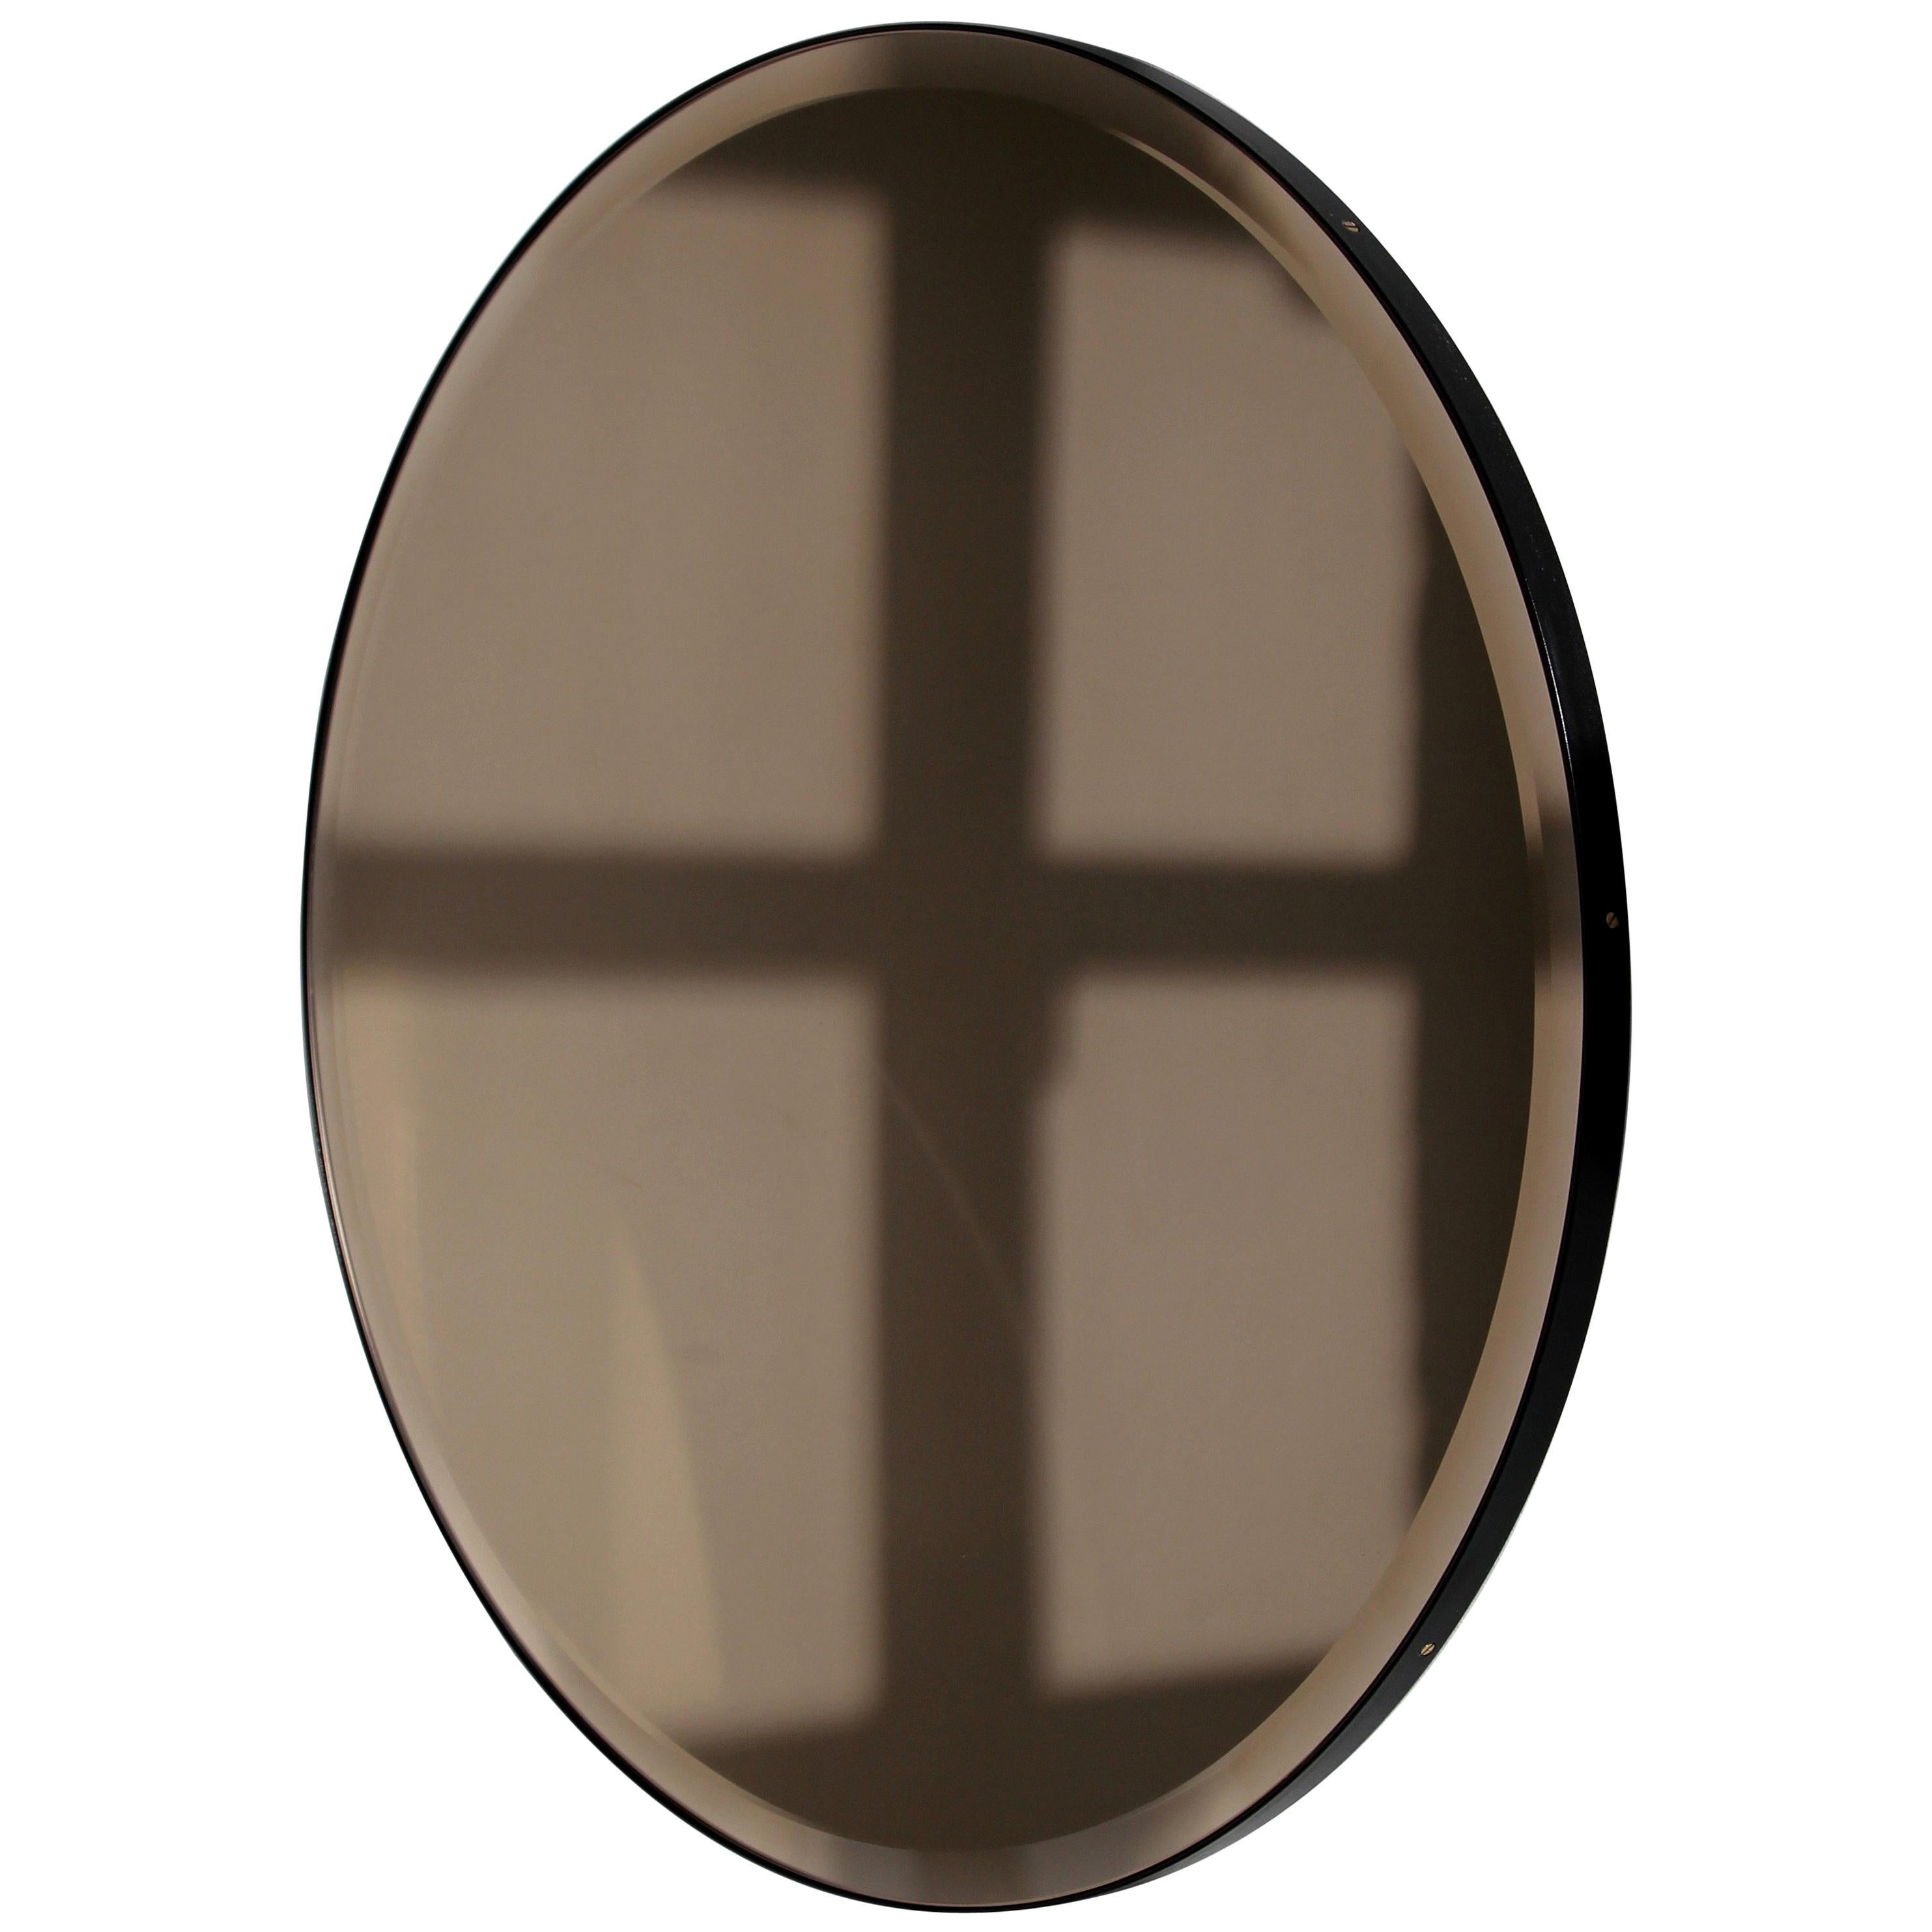 Orbis Bronze Tinted Round Beveled Art Deco Mirror with a Black Frame, Small (Miroir art déco biseauté teinté en bronze avec cadre noir)